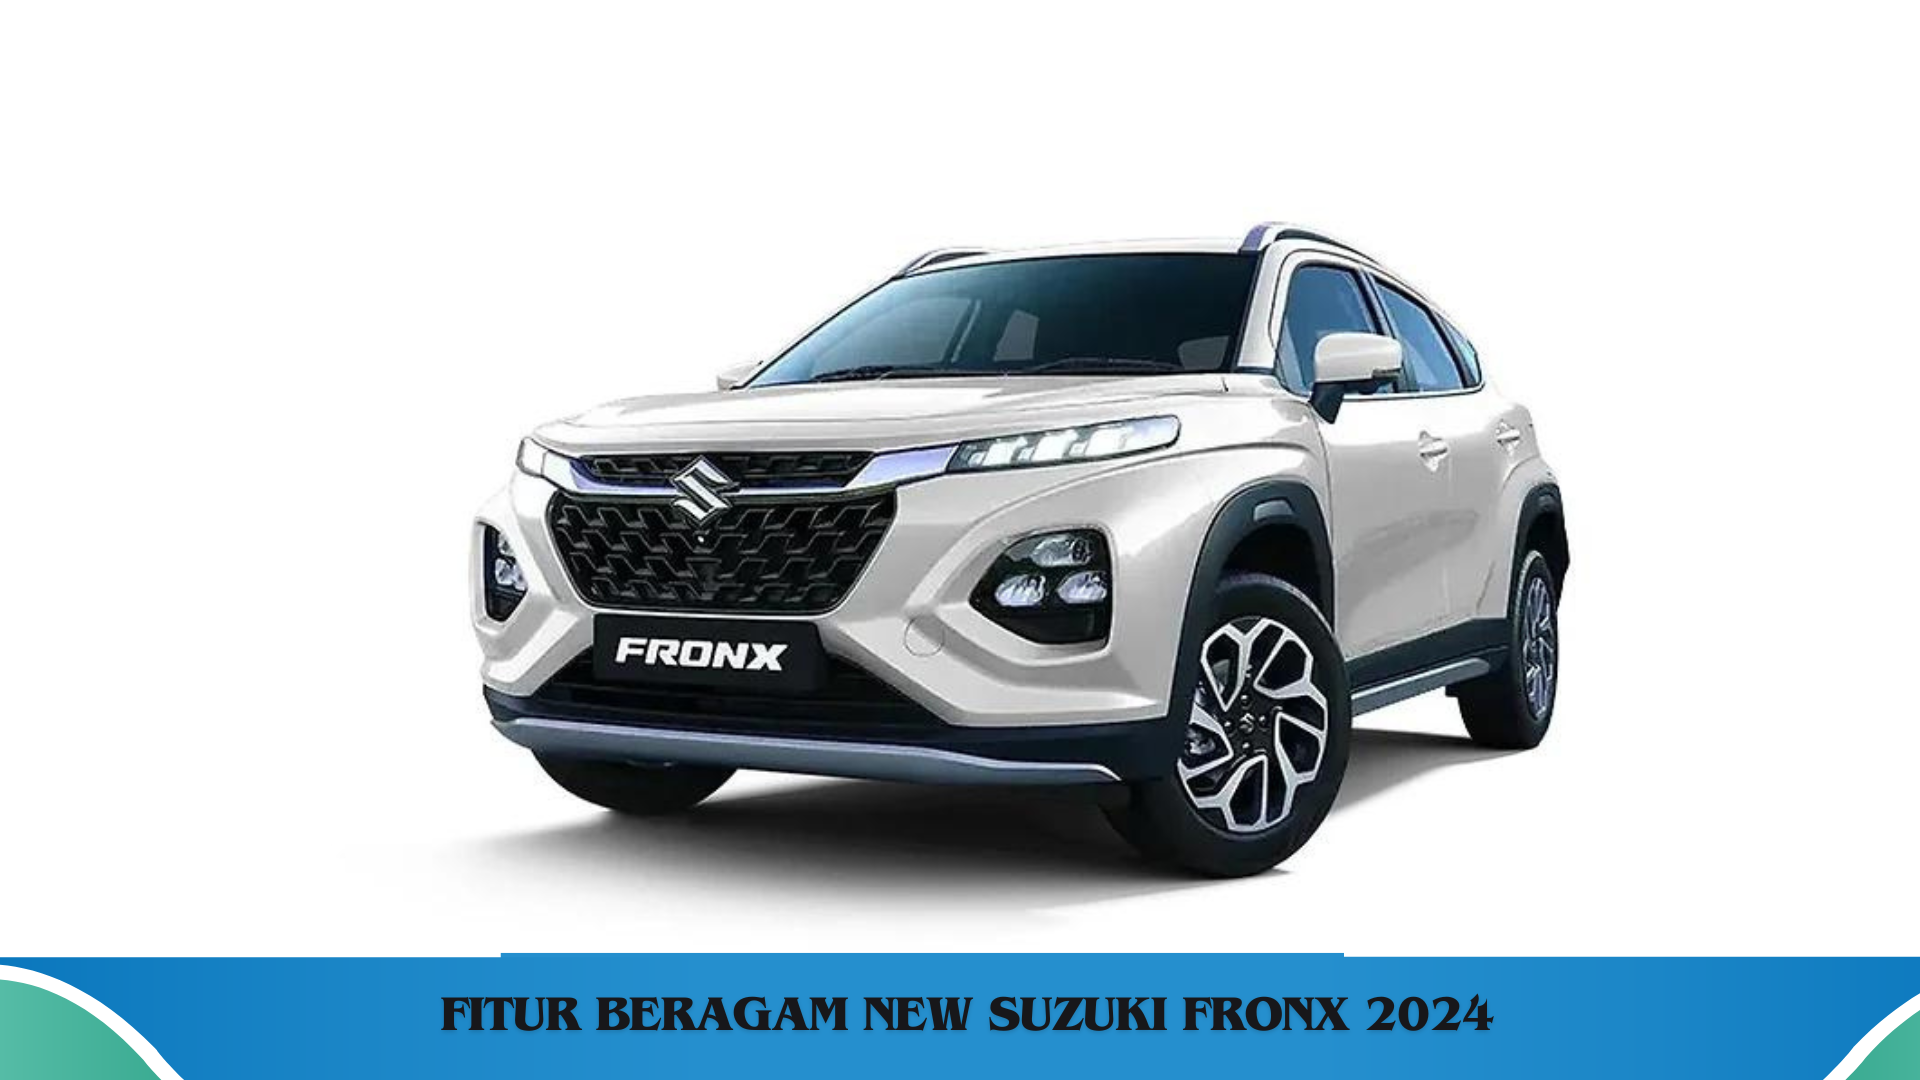 New Suzuki Fronx 2024, SUV dengan Beragam Fitur dan Spesifikasi Menarik untuk Pesaing Lainnya 